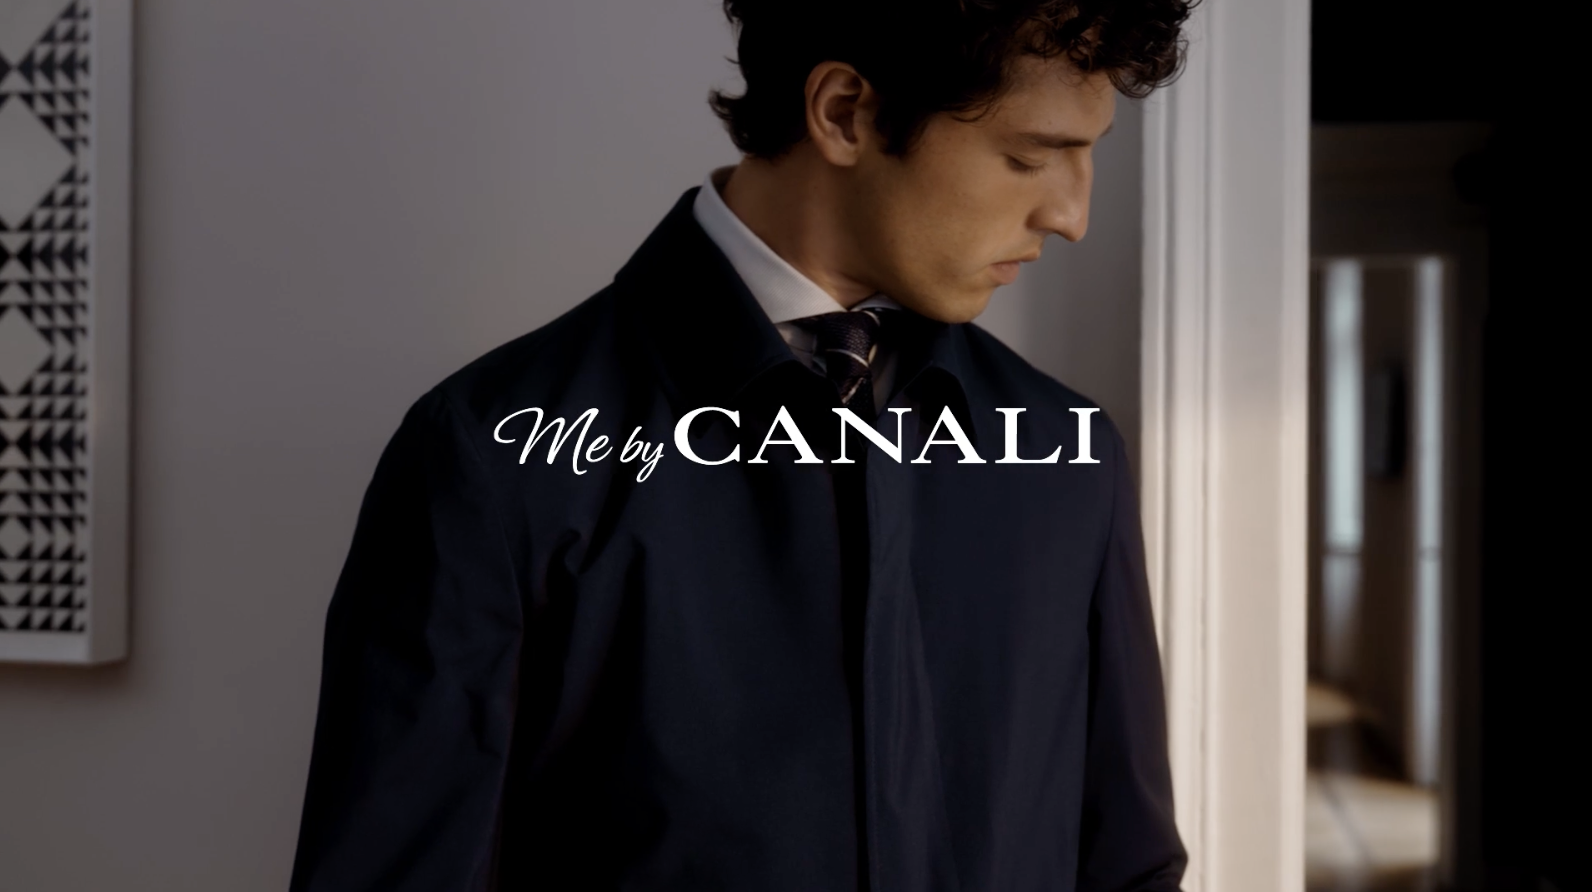 意大利奢侈男装品牌 Canali 今年前三季度营业额大涨 49%，仍将继续投资中国市场